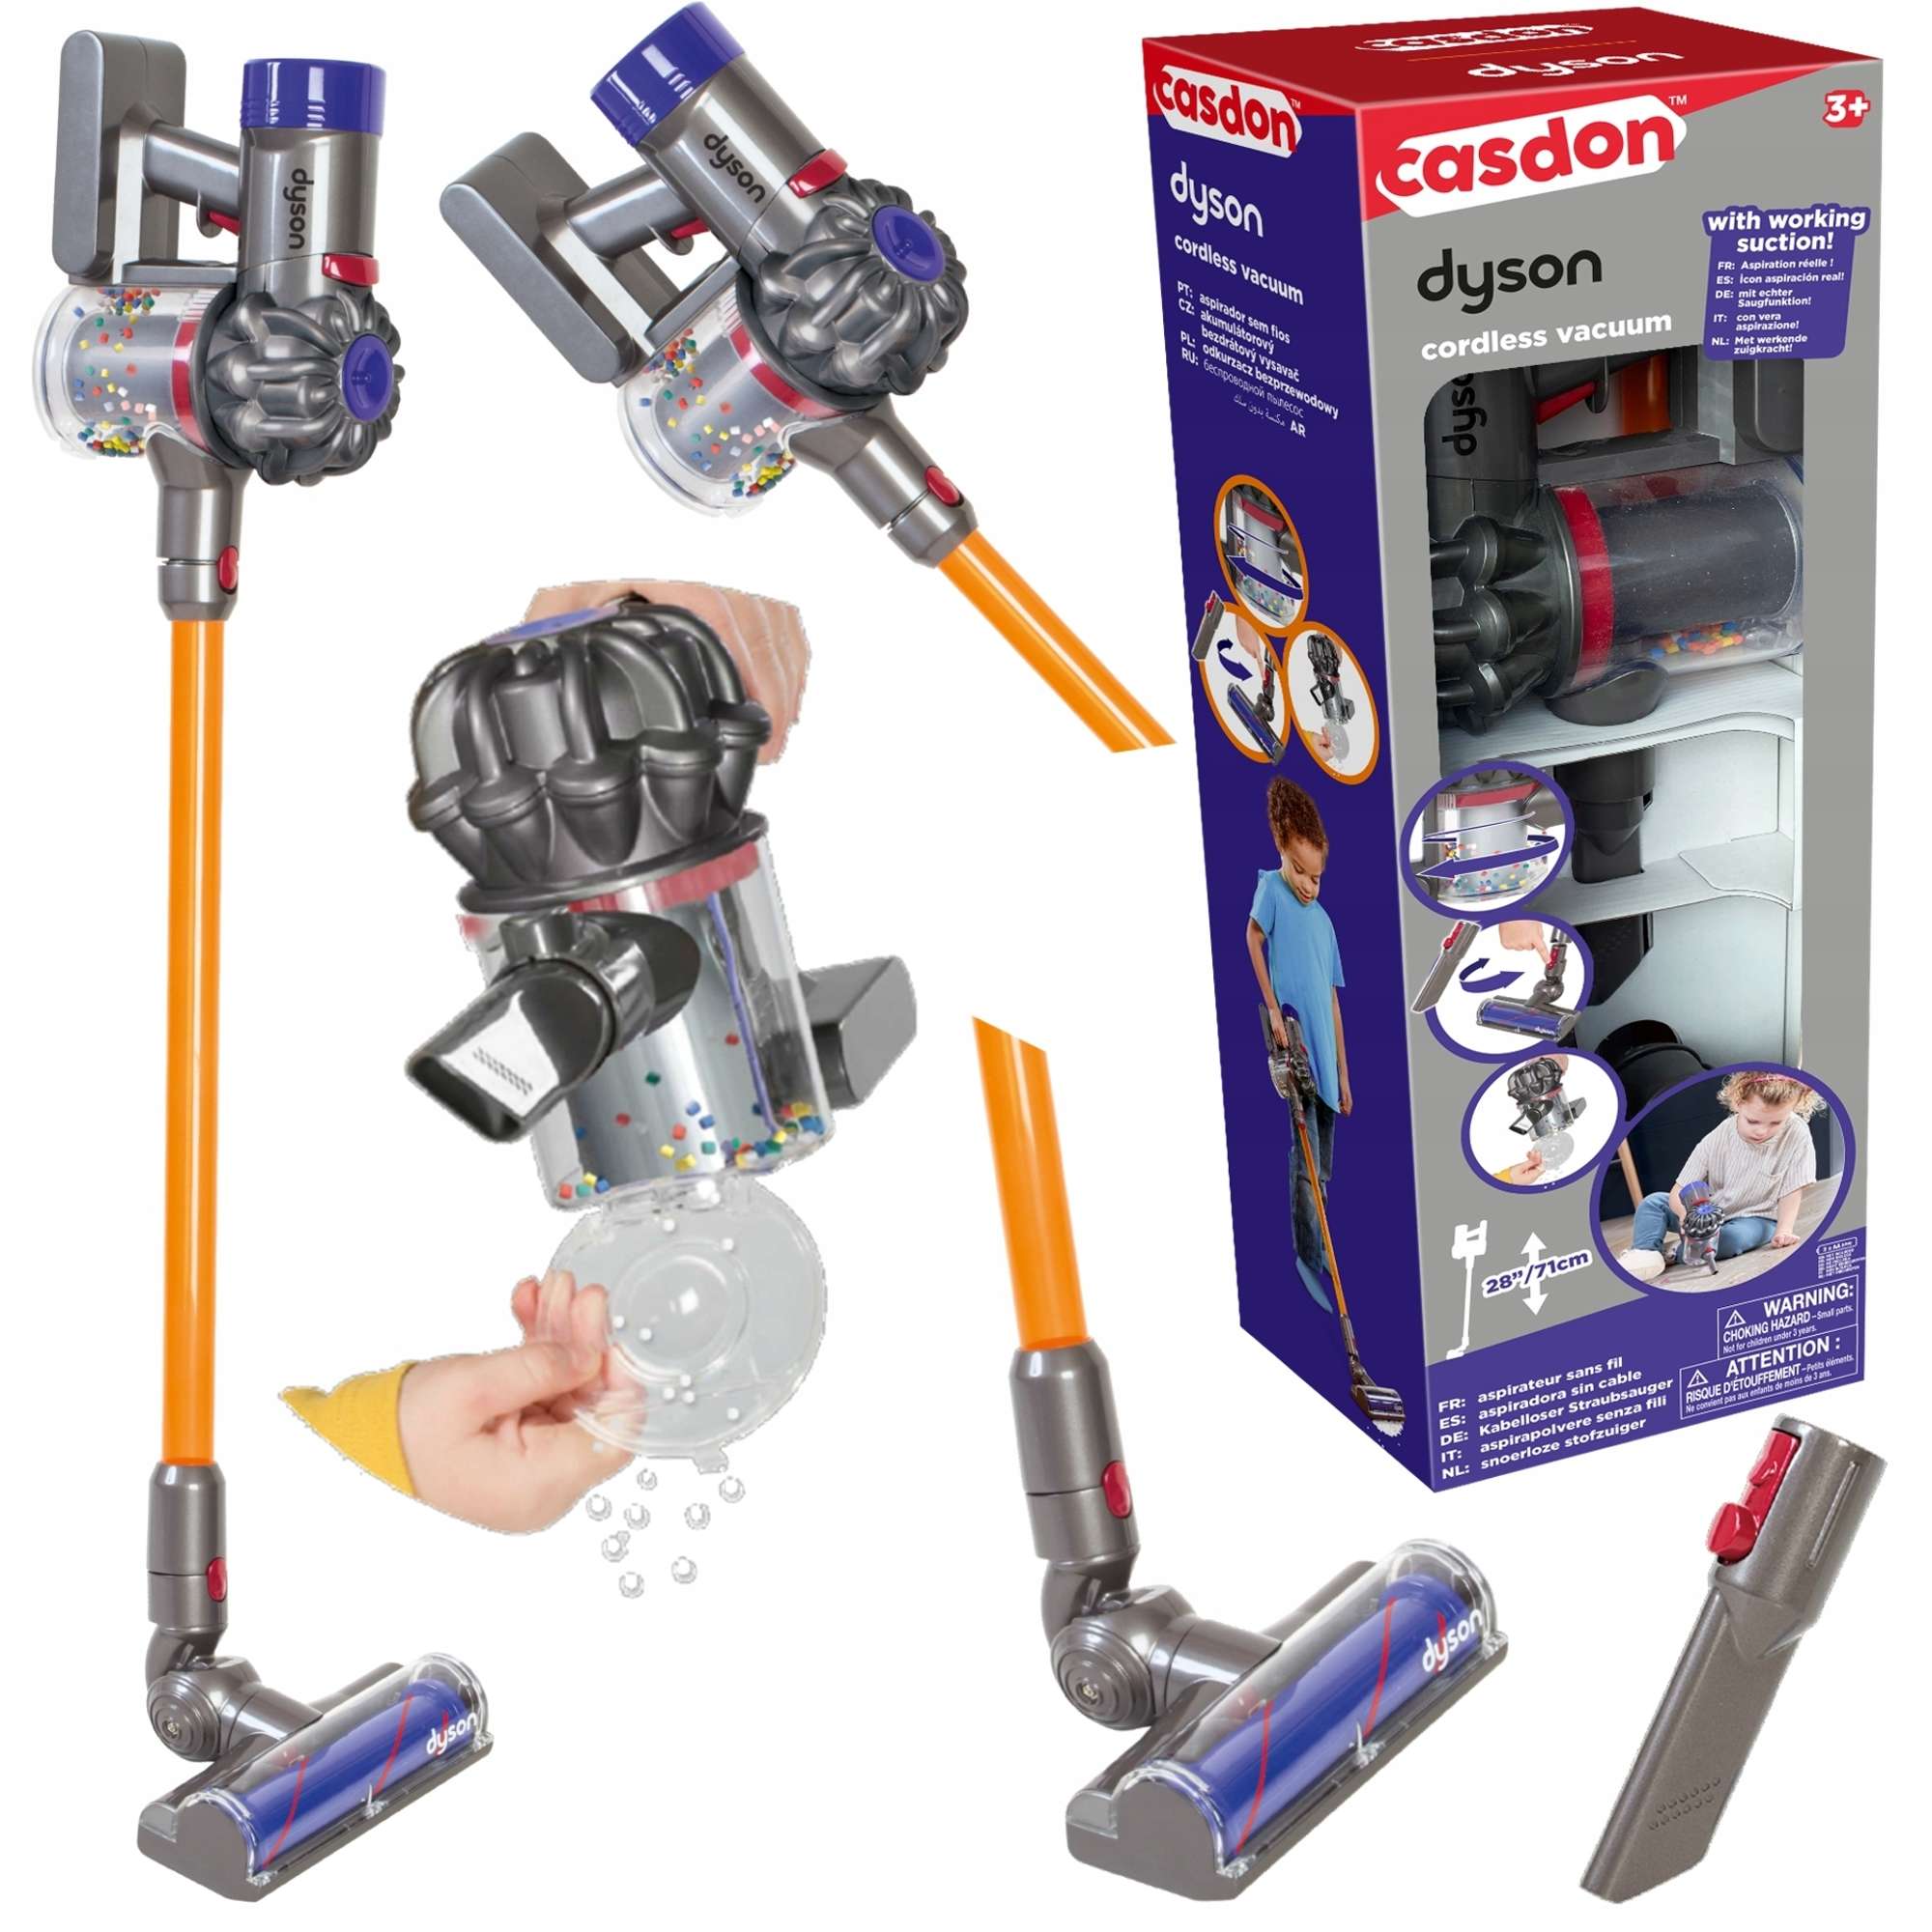 Staubsaug Vakuum Upright Cordless für Dyson Casdon Kinder Spielzeug interaktive